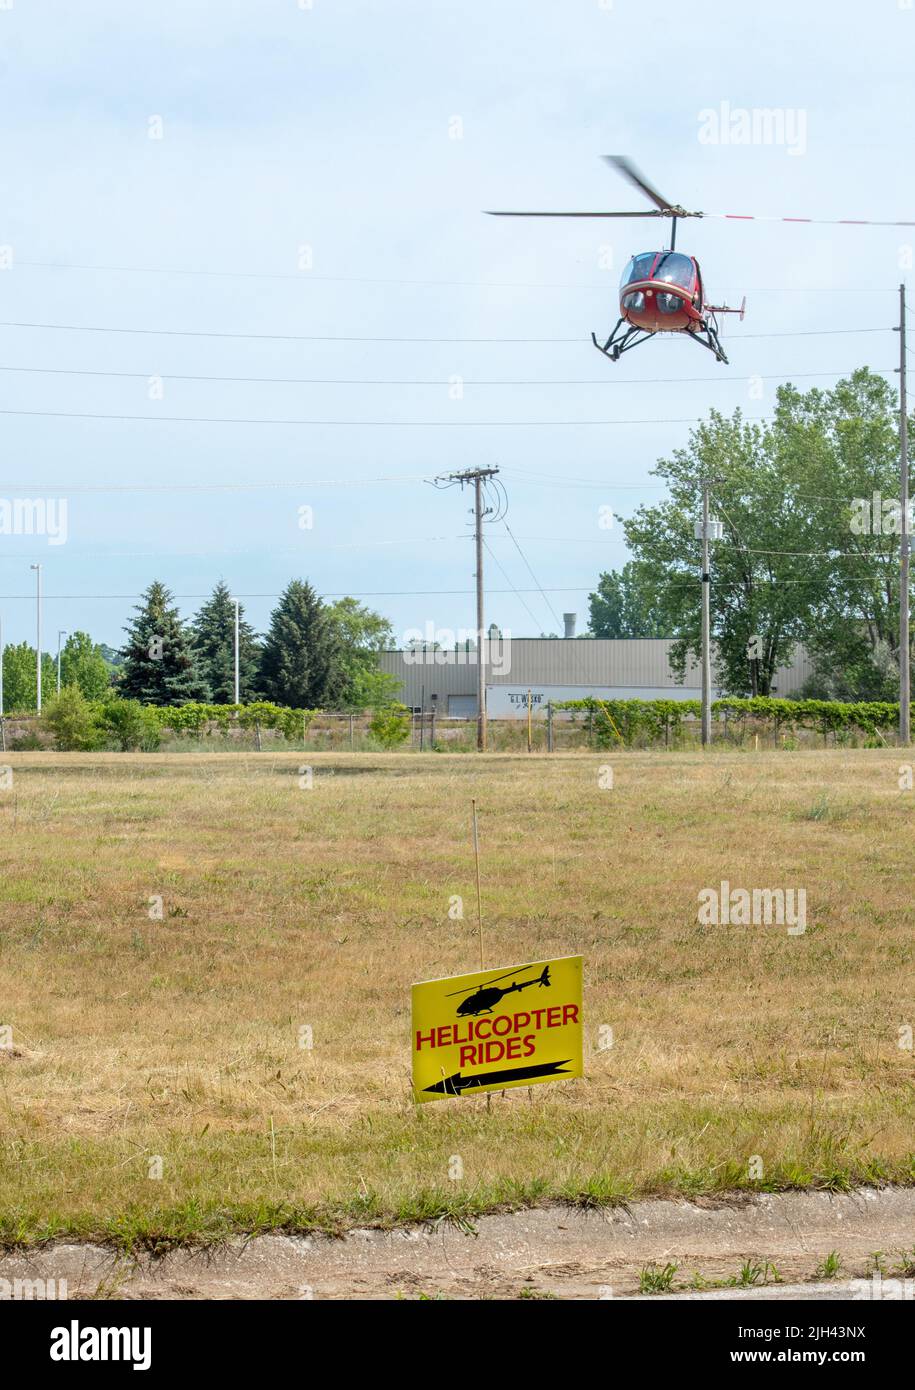 20 juin 2021, St Joseph MI USA, un panneau annonce les tours en hélicoptère lors d'un événement et d'un spectacle aérien au Michigan Banque D'Images